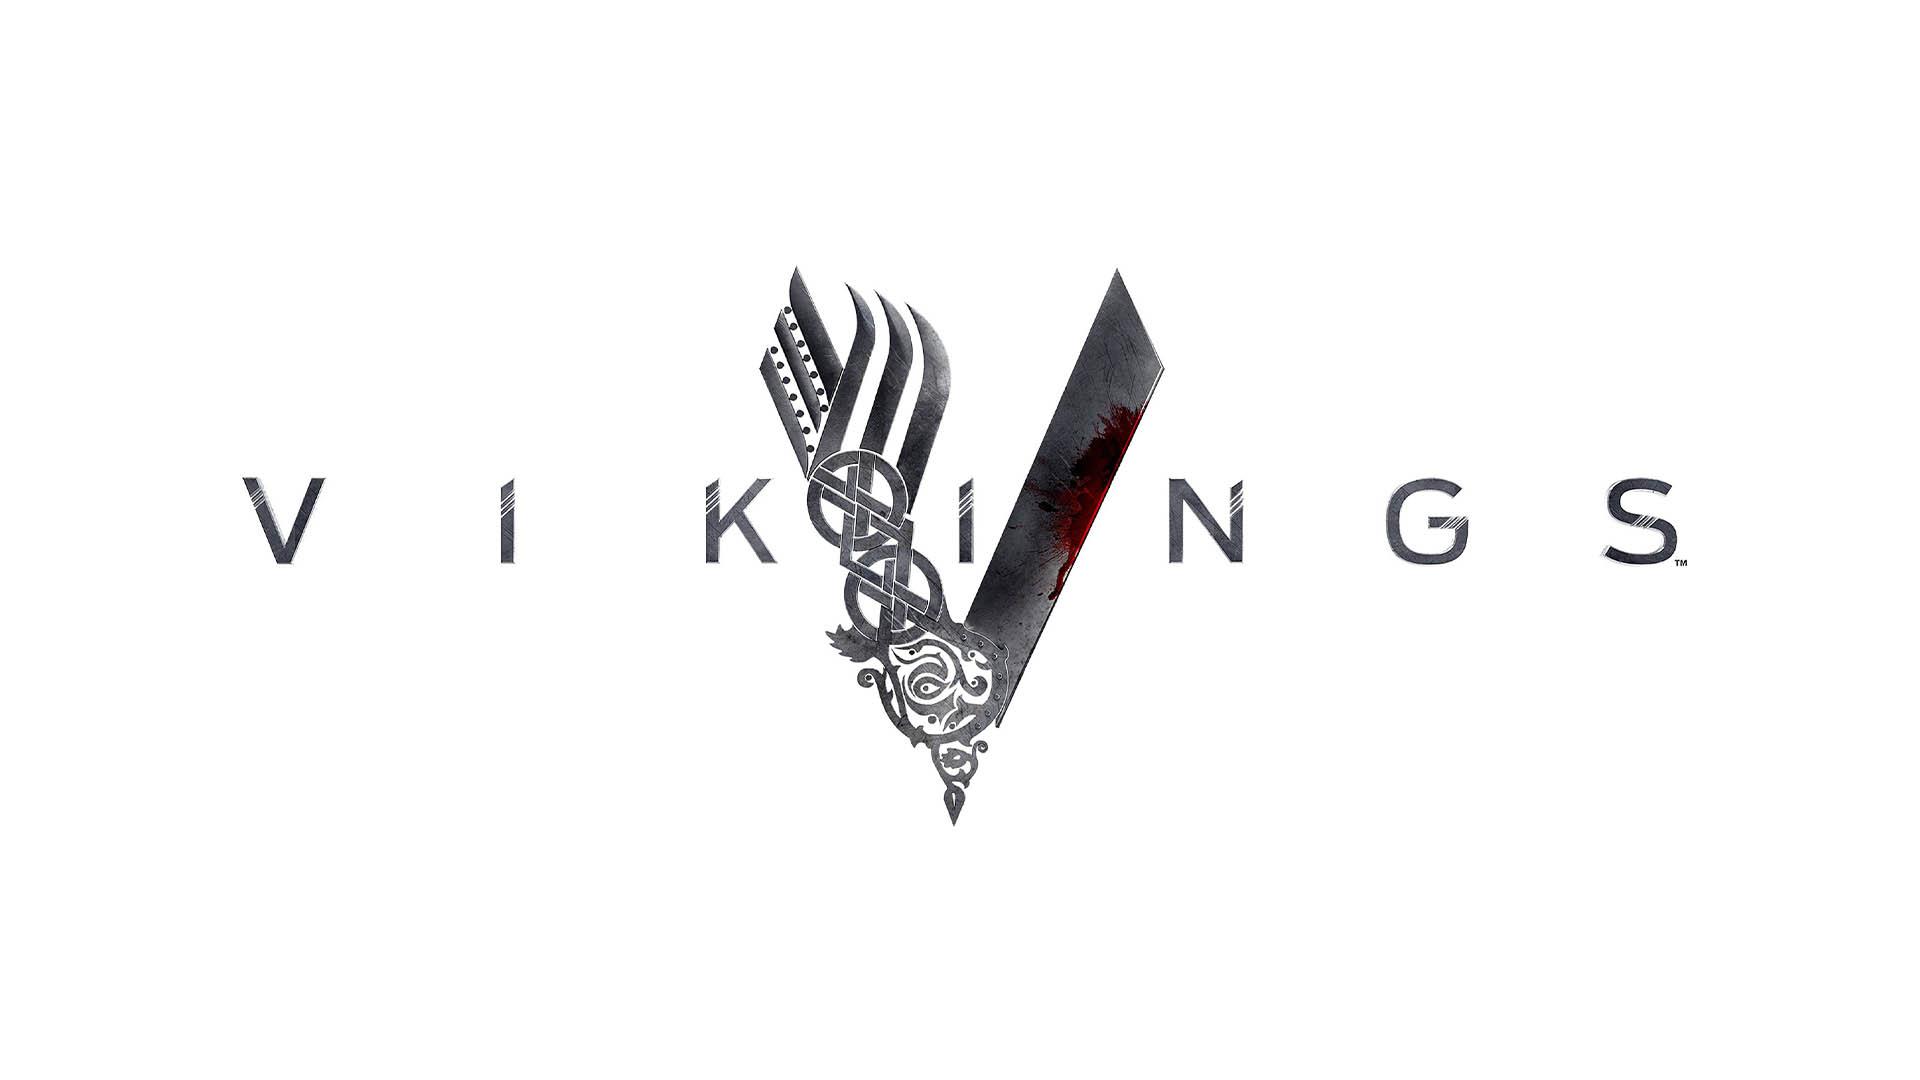 لوگو و نام سریال vikings در تصویری سفید